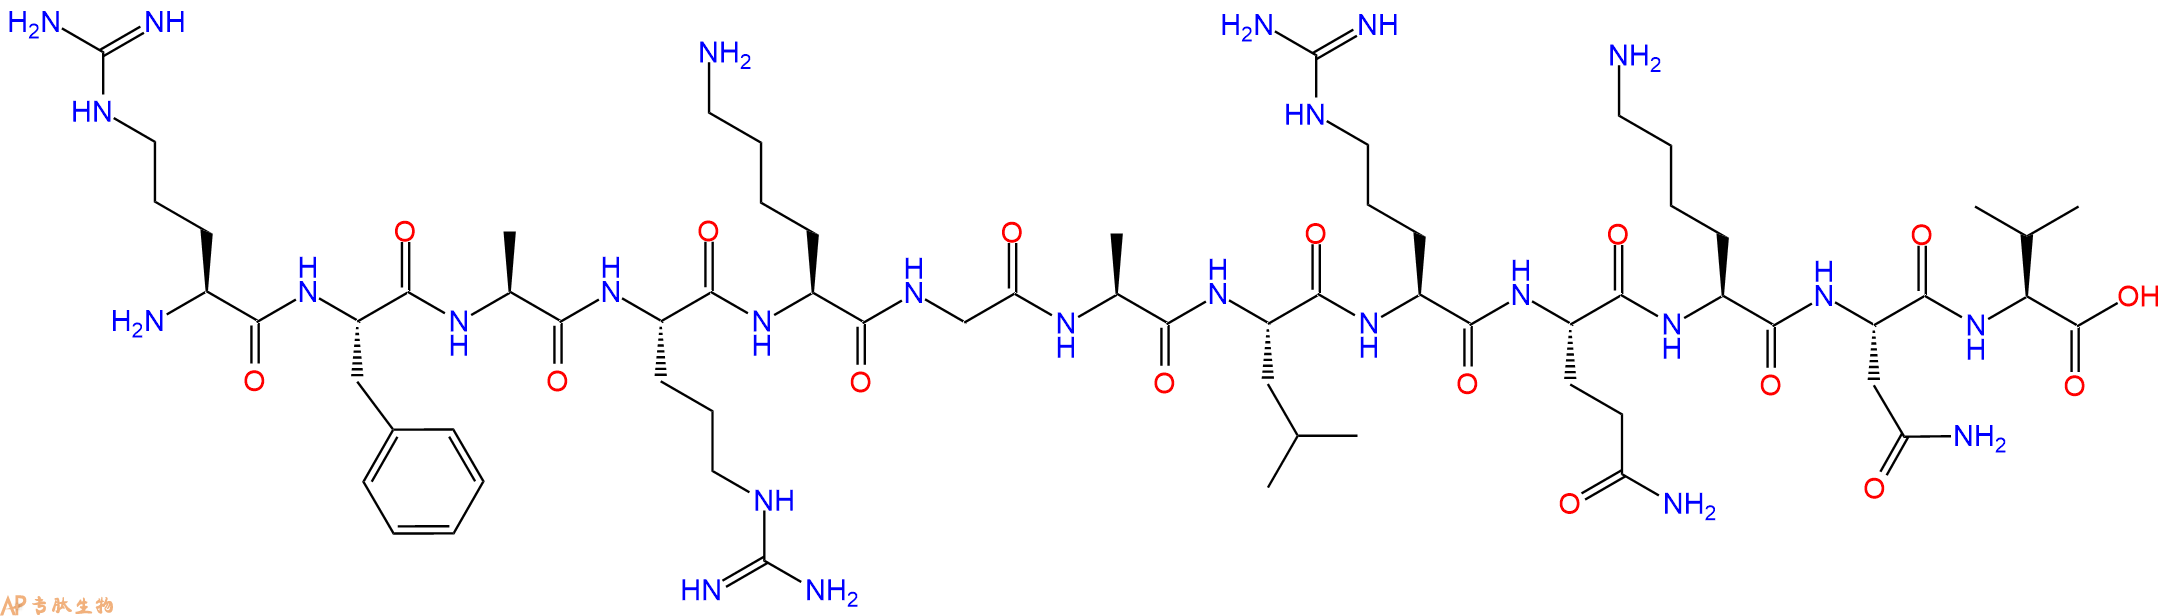 专肽生物产品蛋白激酶C片段 Protein Kinase C (19-31)121545-65-1